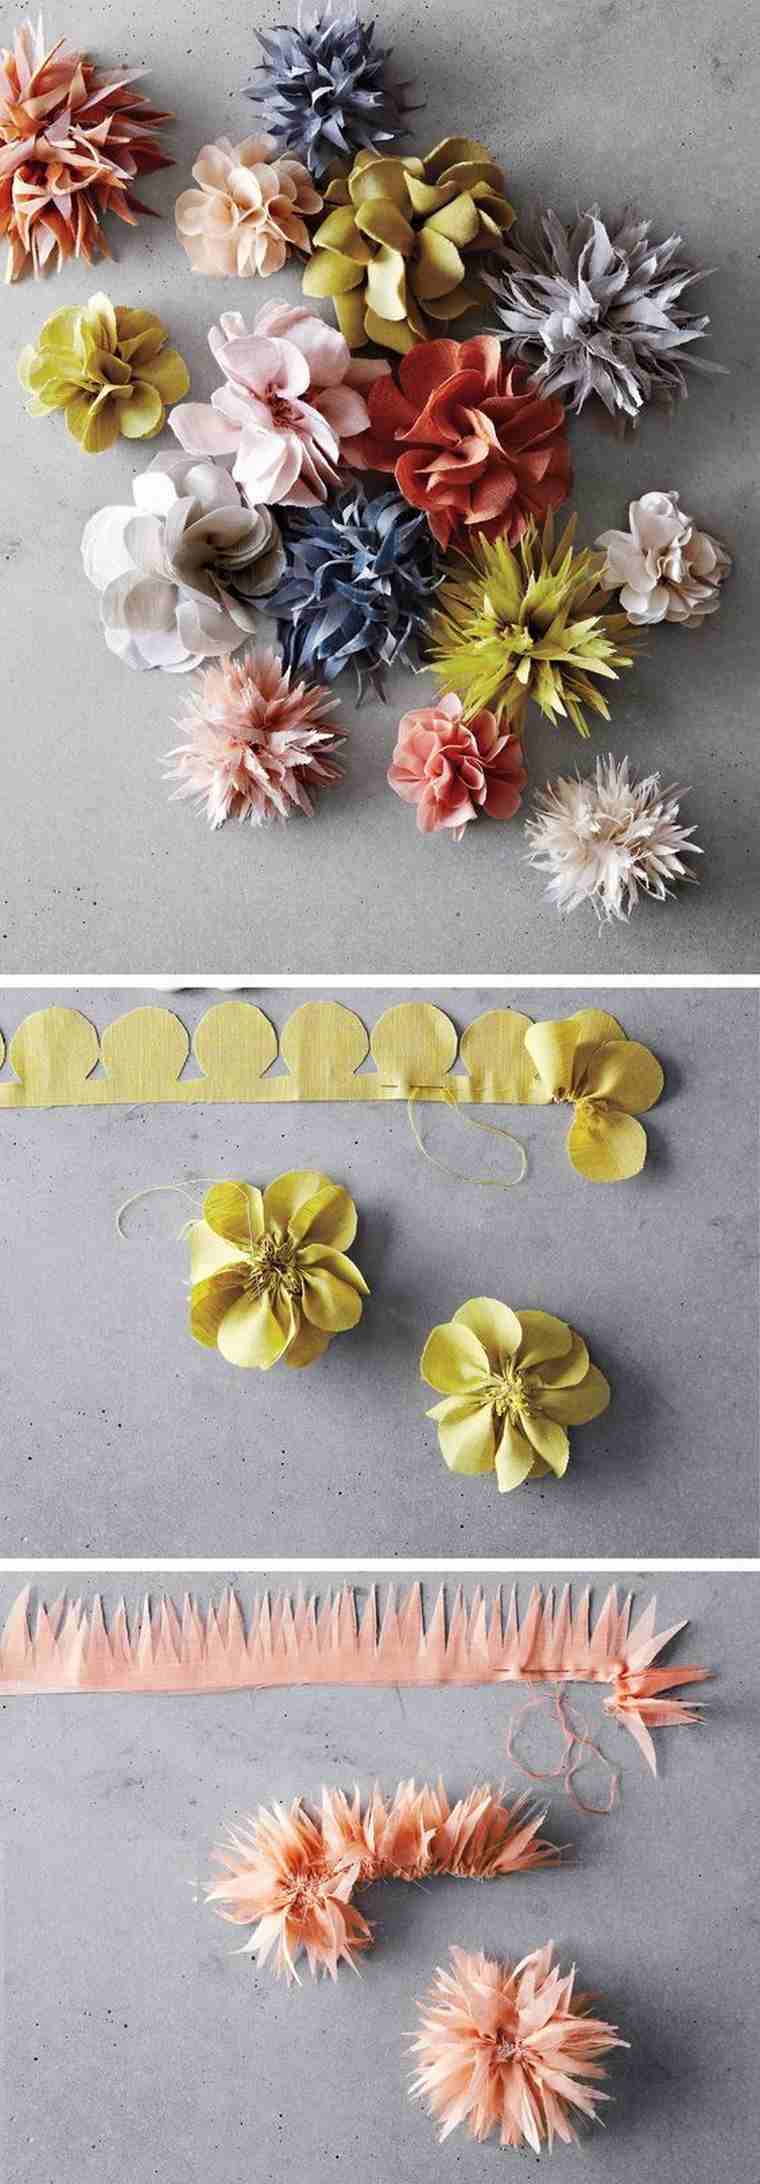 idée projet couture diy facile réaliser soi-même fleurs en tissu